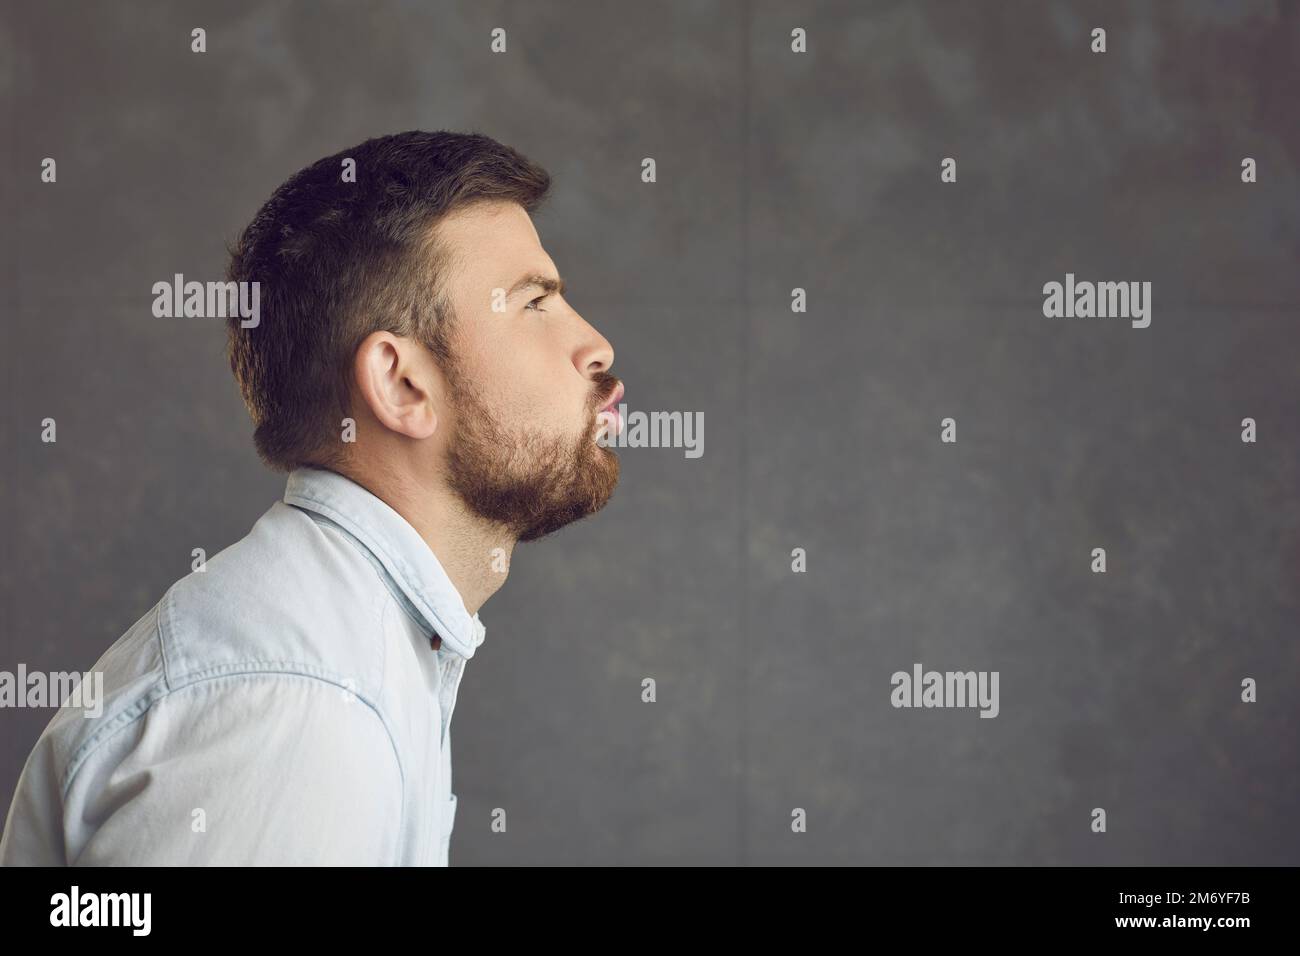 Profilporträt eines Mannes, der Lippen schmollt, einen Kuss gibt oder einen Luftkuss auf der leeren Seite bläst Stockfoto